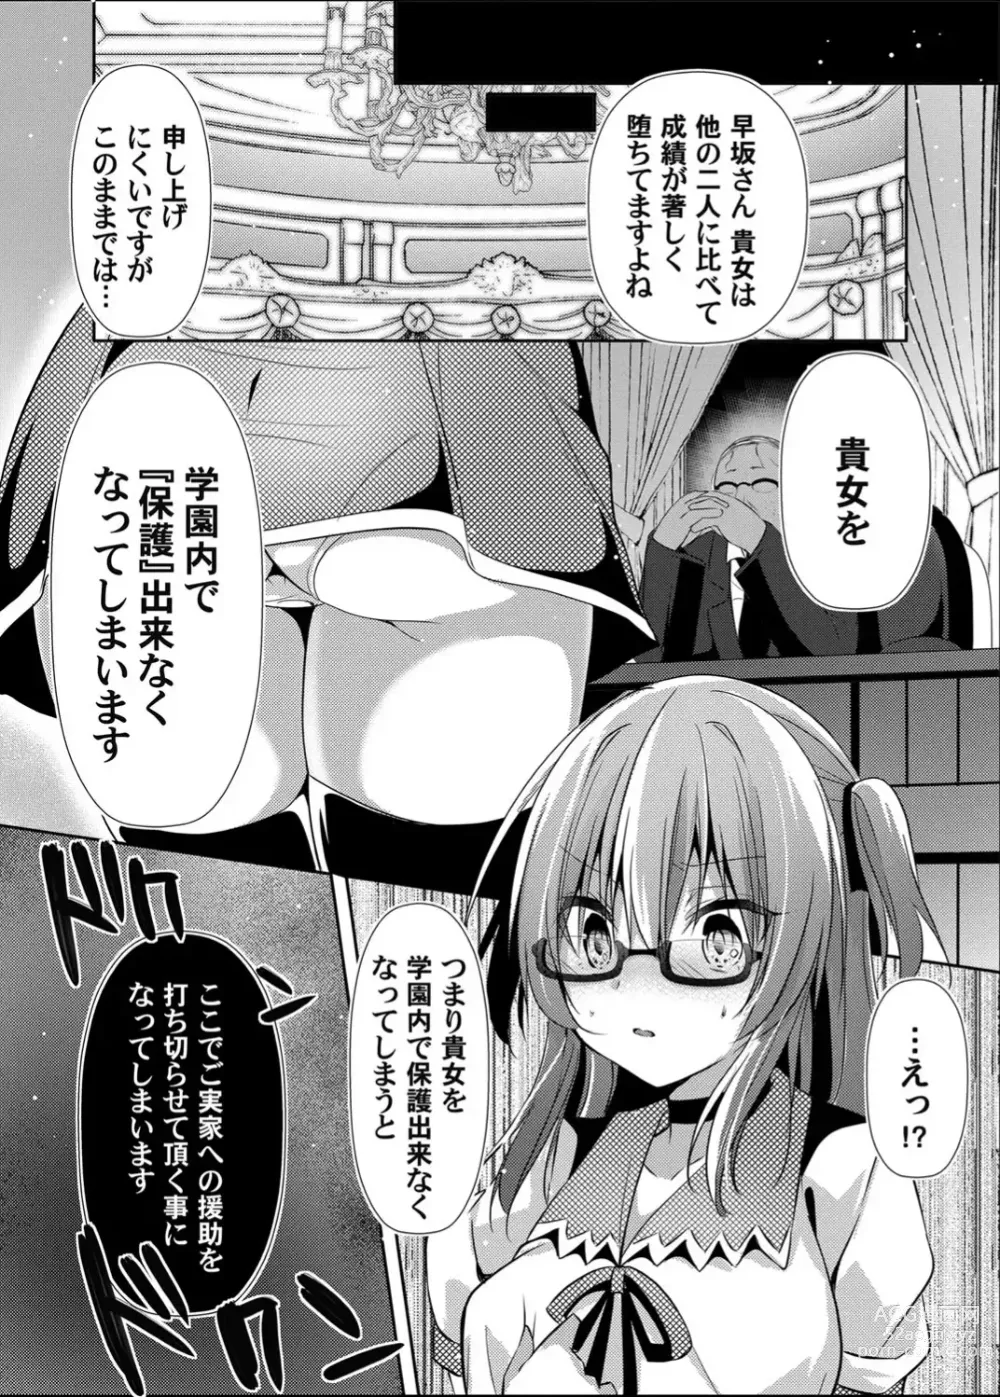 Page 58 of doujinshi Botsuraku Lady no Hakoniwa Showtime